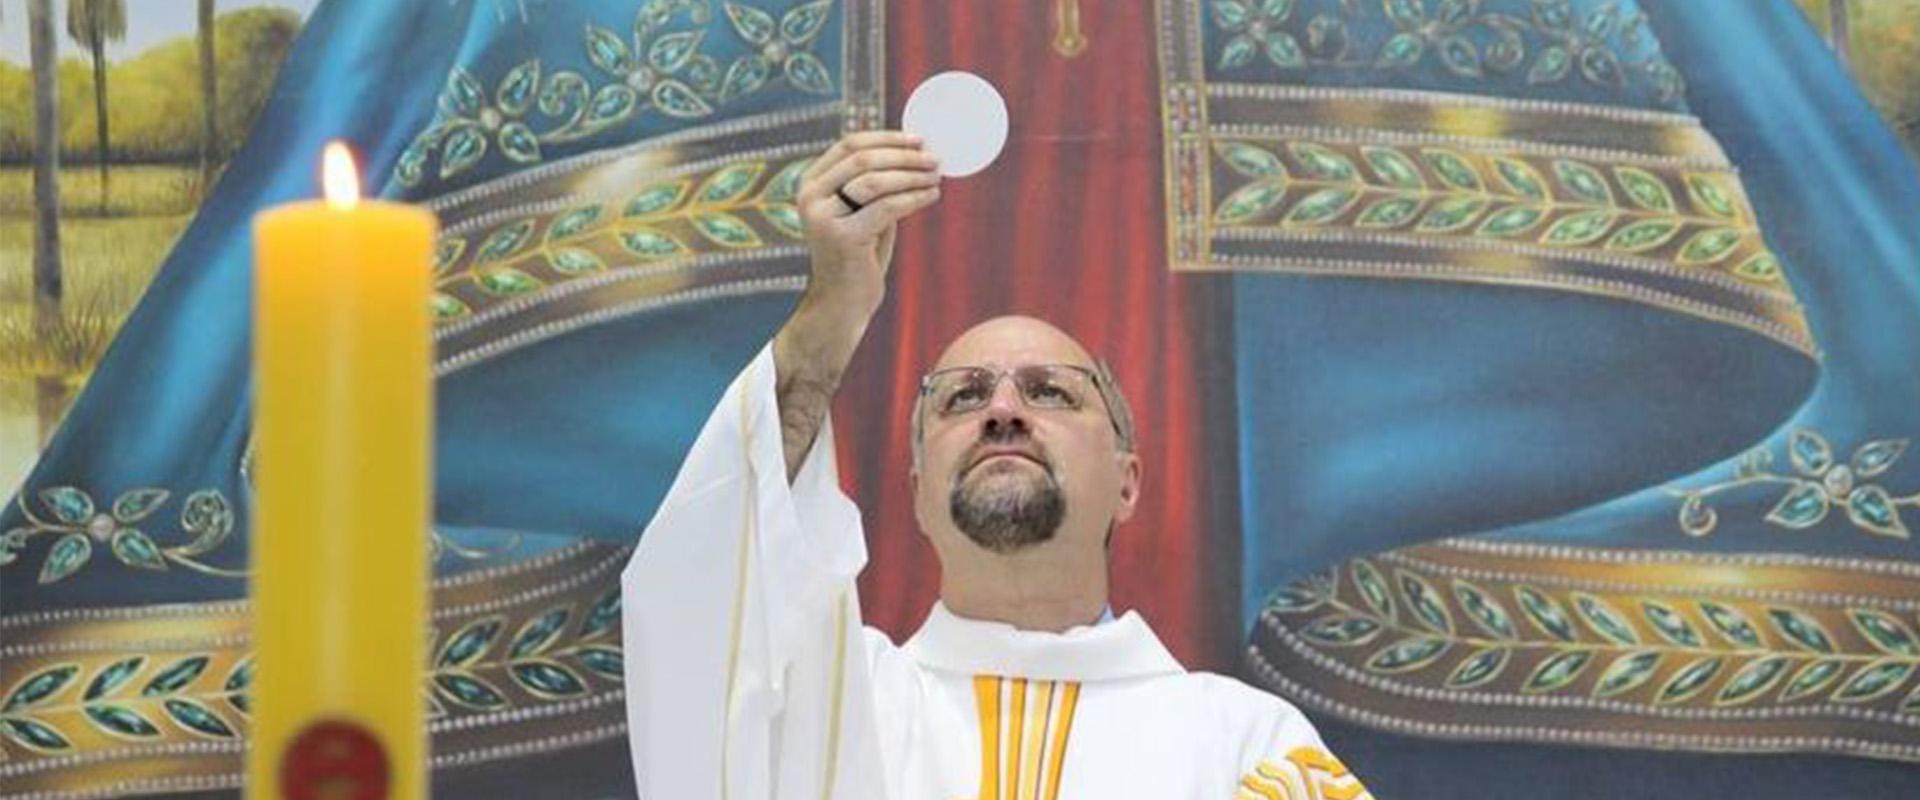 Padre Lúcio Nicoletto sobre a vocação ao sacerdócio: “Jesus nos ama, por isso ele nos chama”